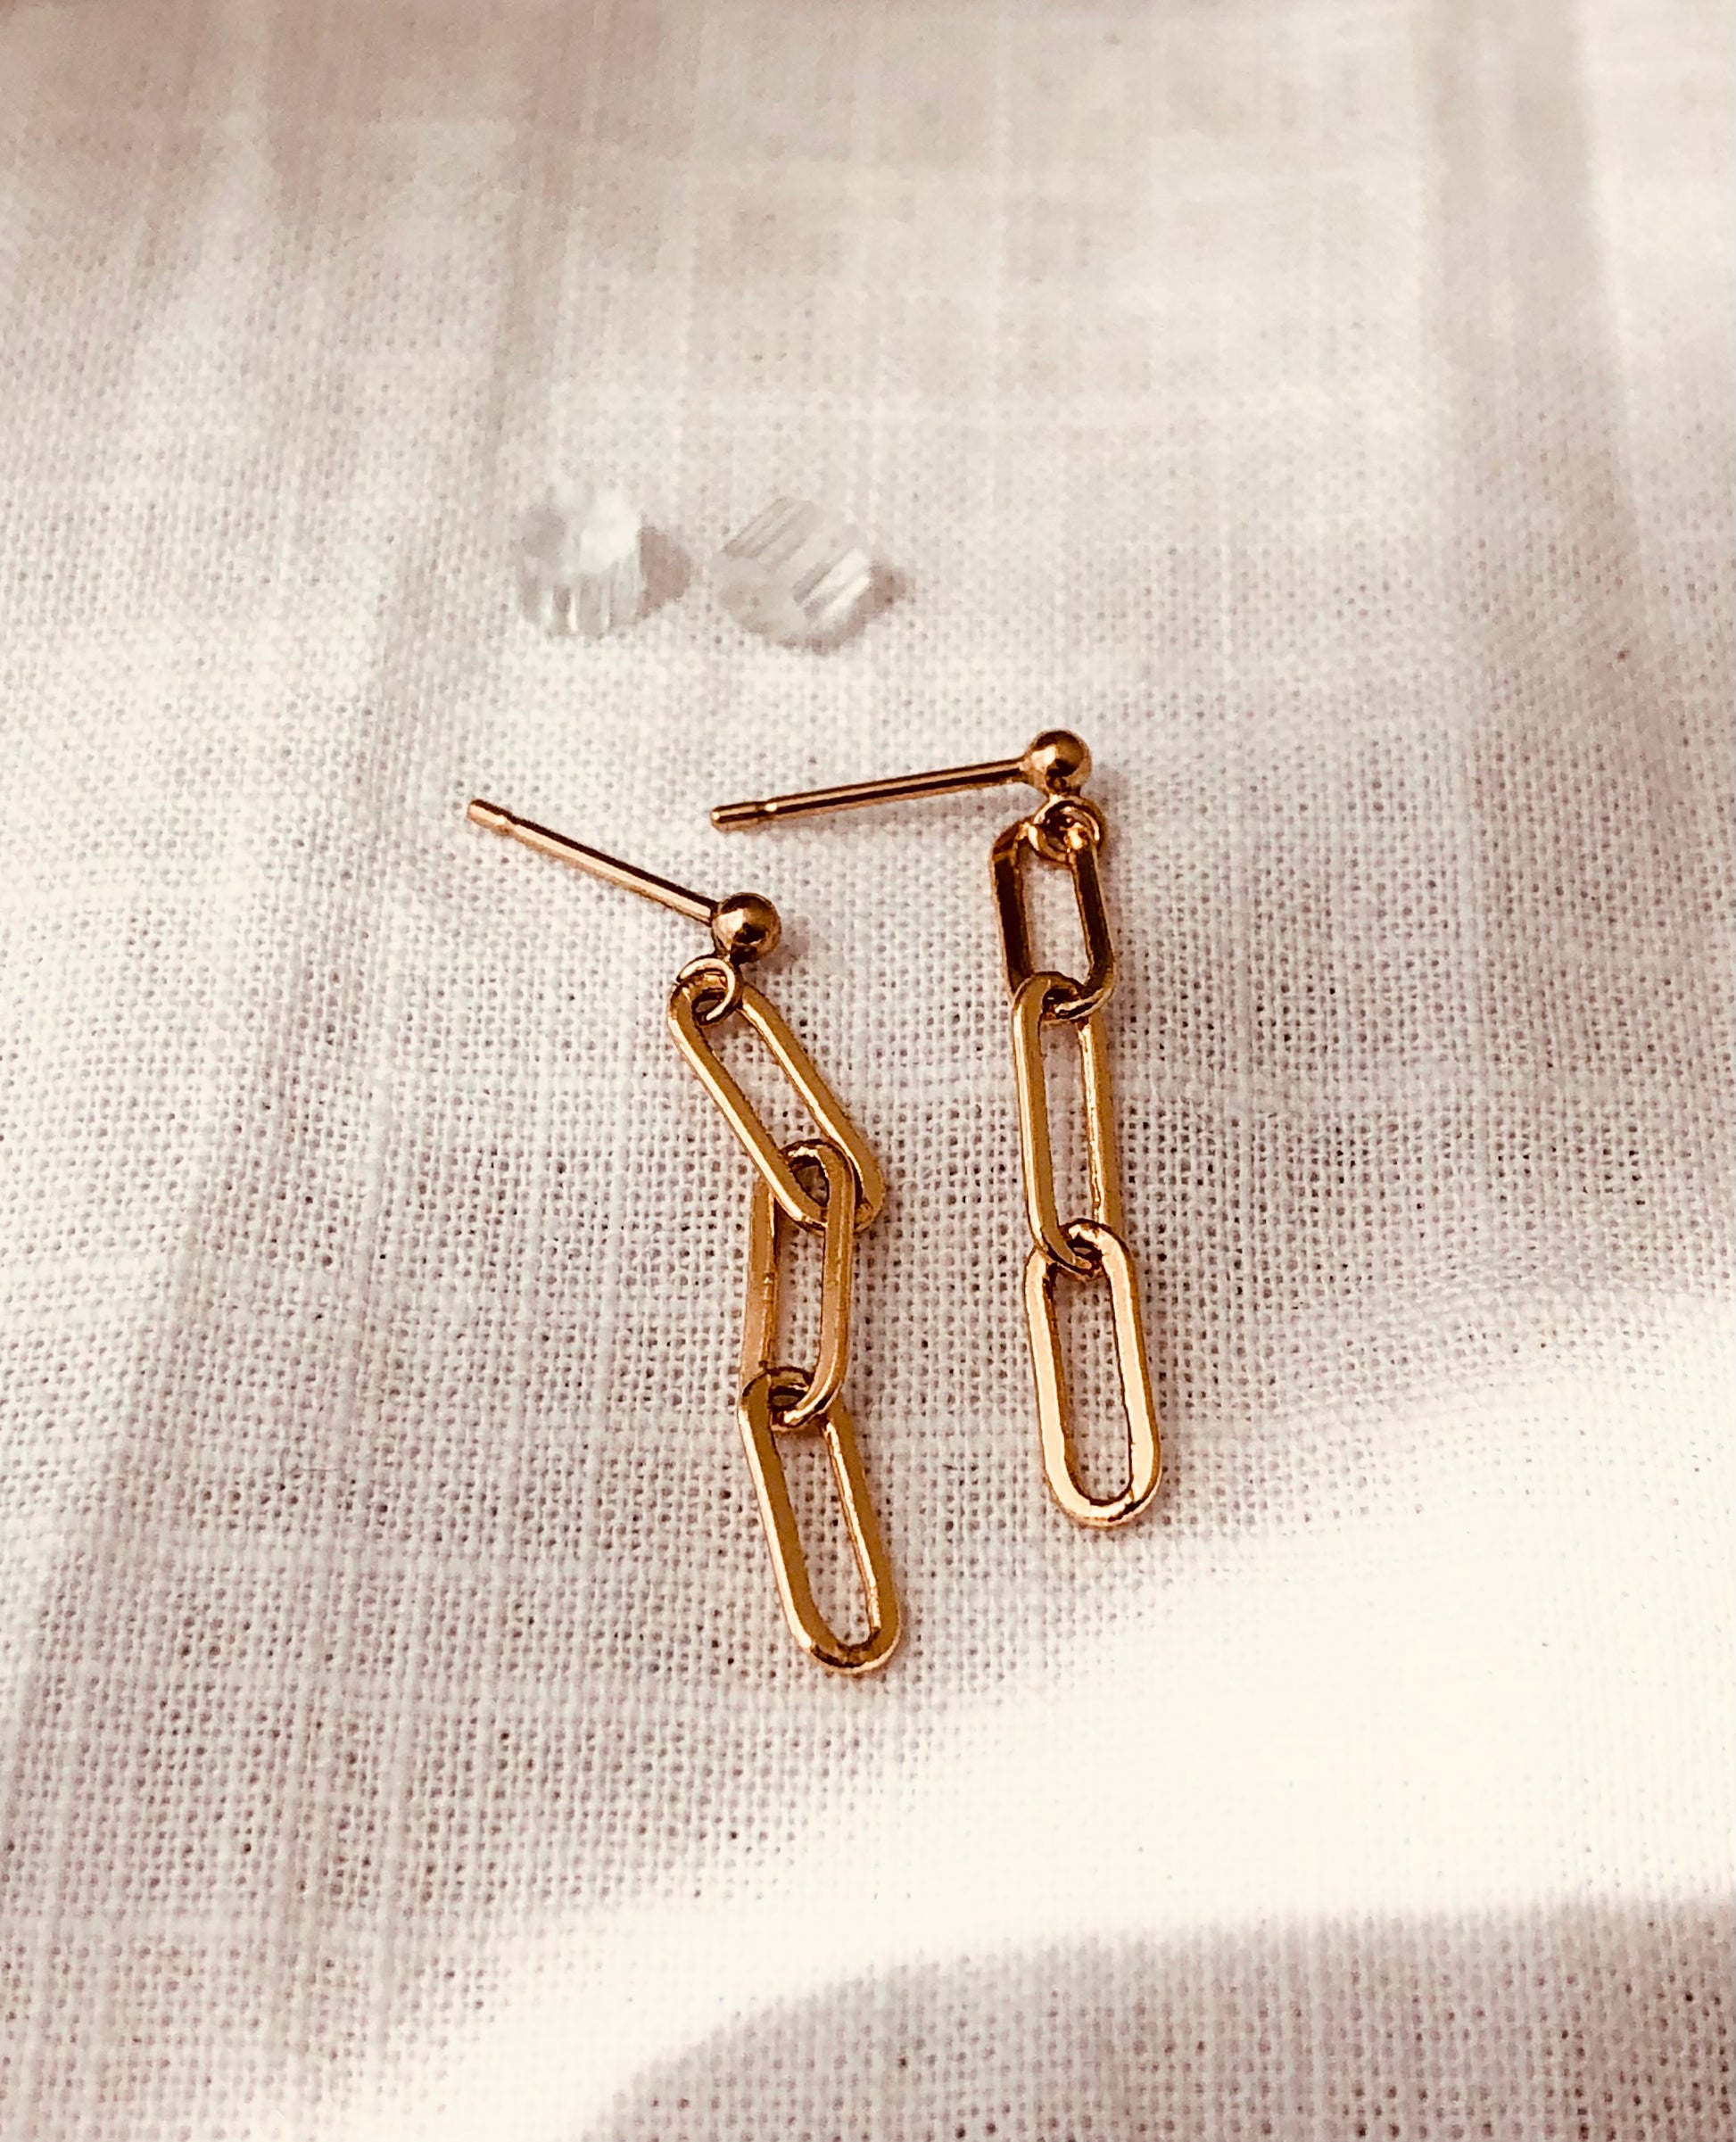 Paperclip Link Earrings, Paper Clip Link Studs, Linear Drop Earrings, Paper Clip Chain Earrings Everyday Jewelry, Gold Dainty Drop Earrings